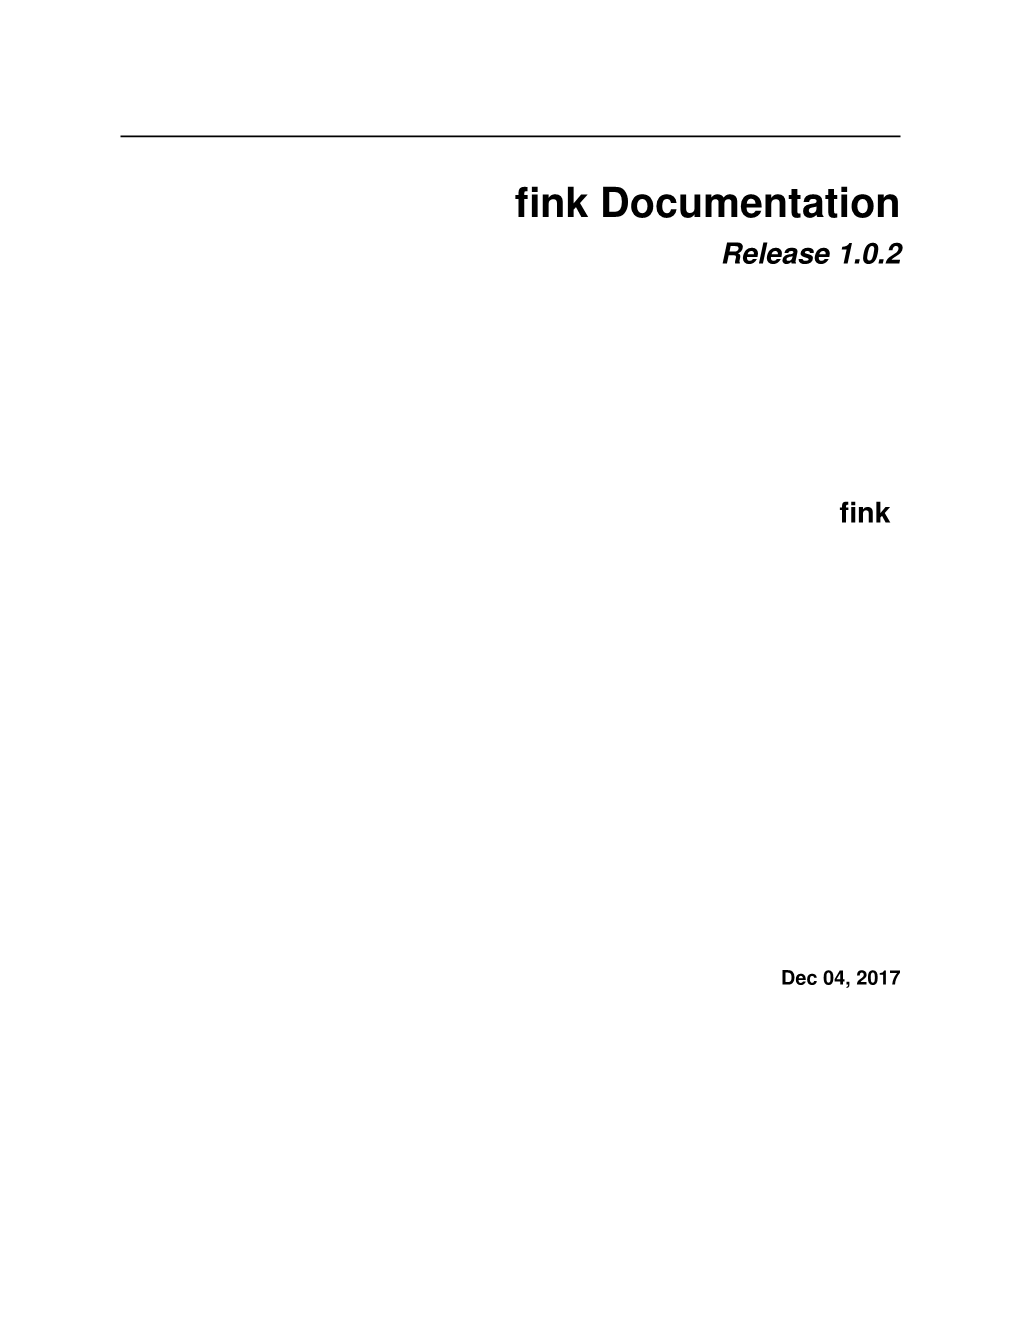 Fink Documentation